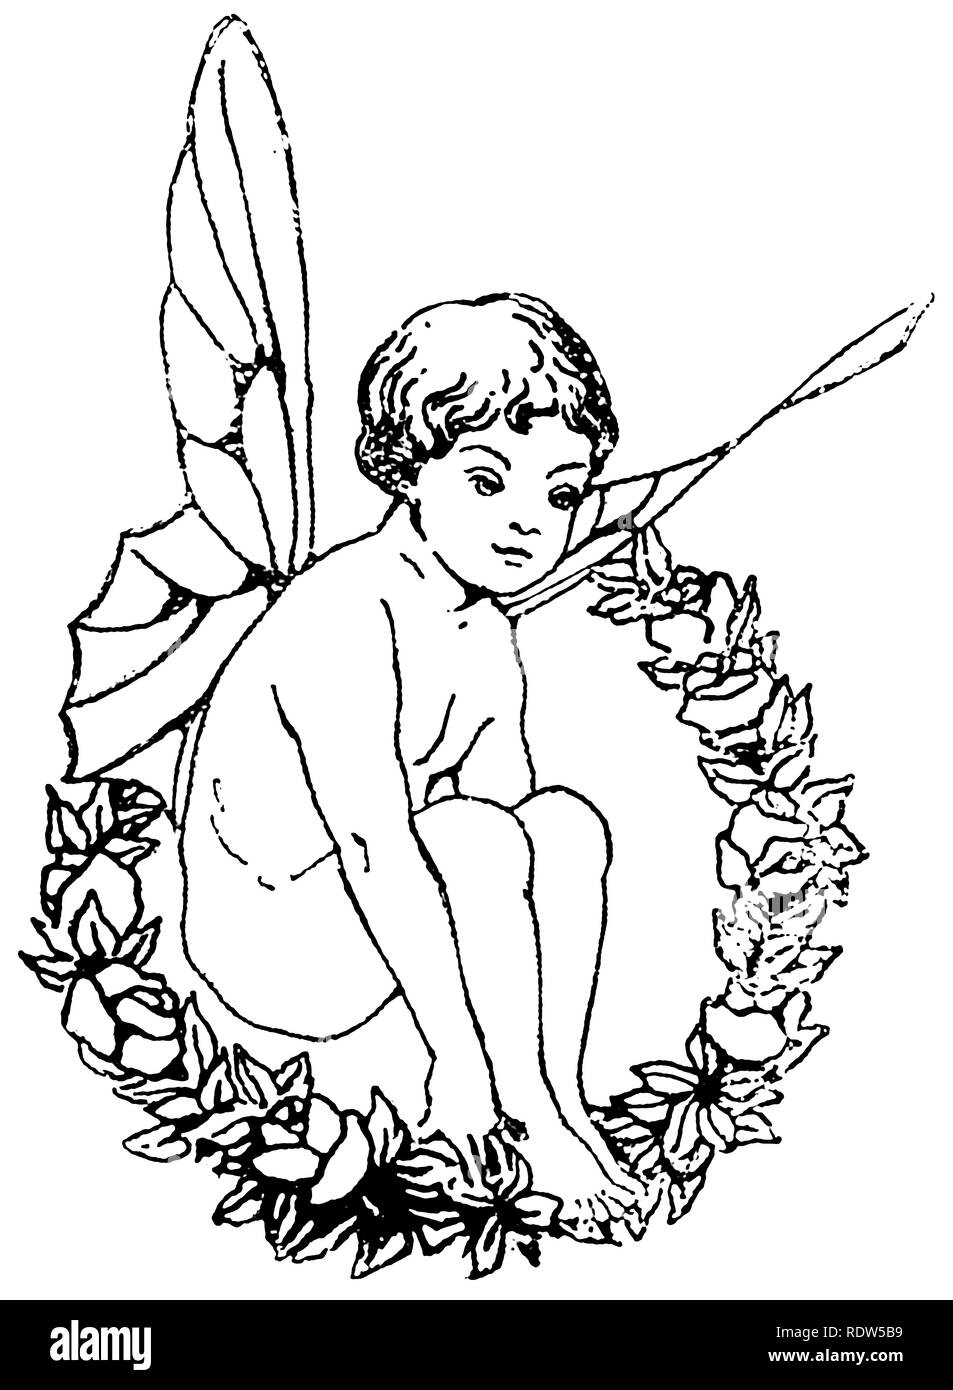 Stich einer Zeichnung eines geflügelten Feenkindes, das im Kranz der Blätter und der Blumen sitzt, vermutlich ein Junge. Stockfoto